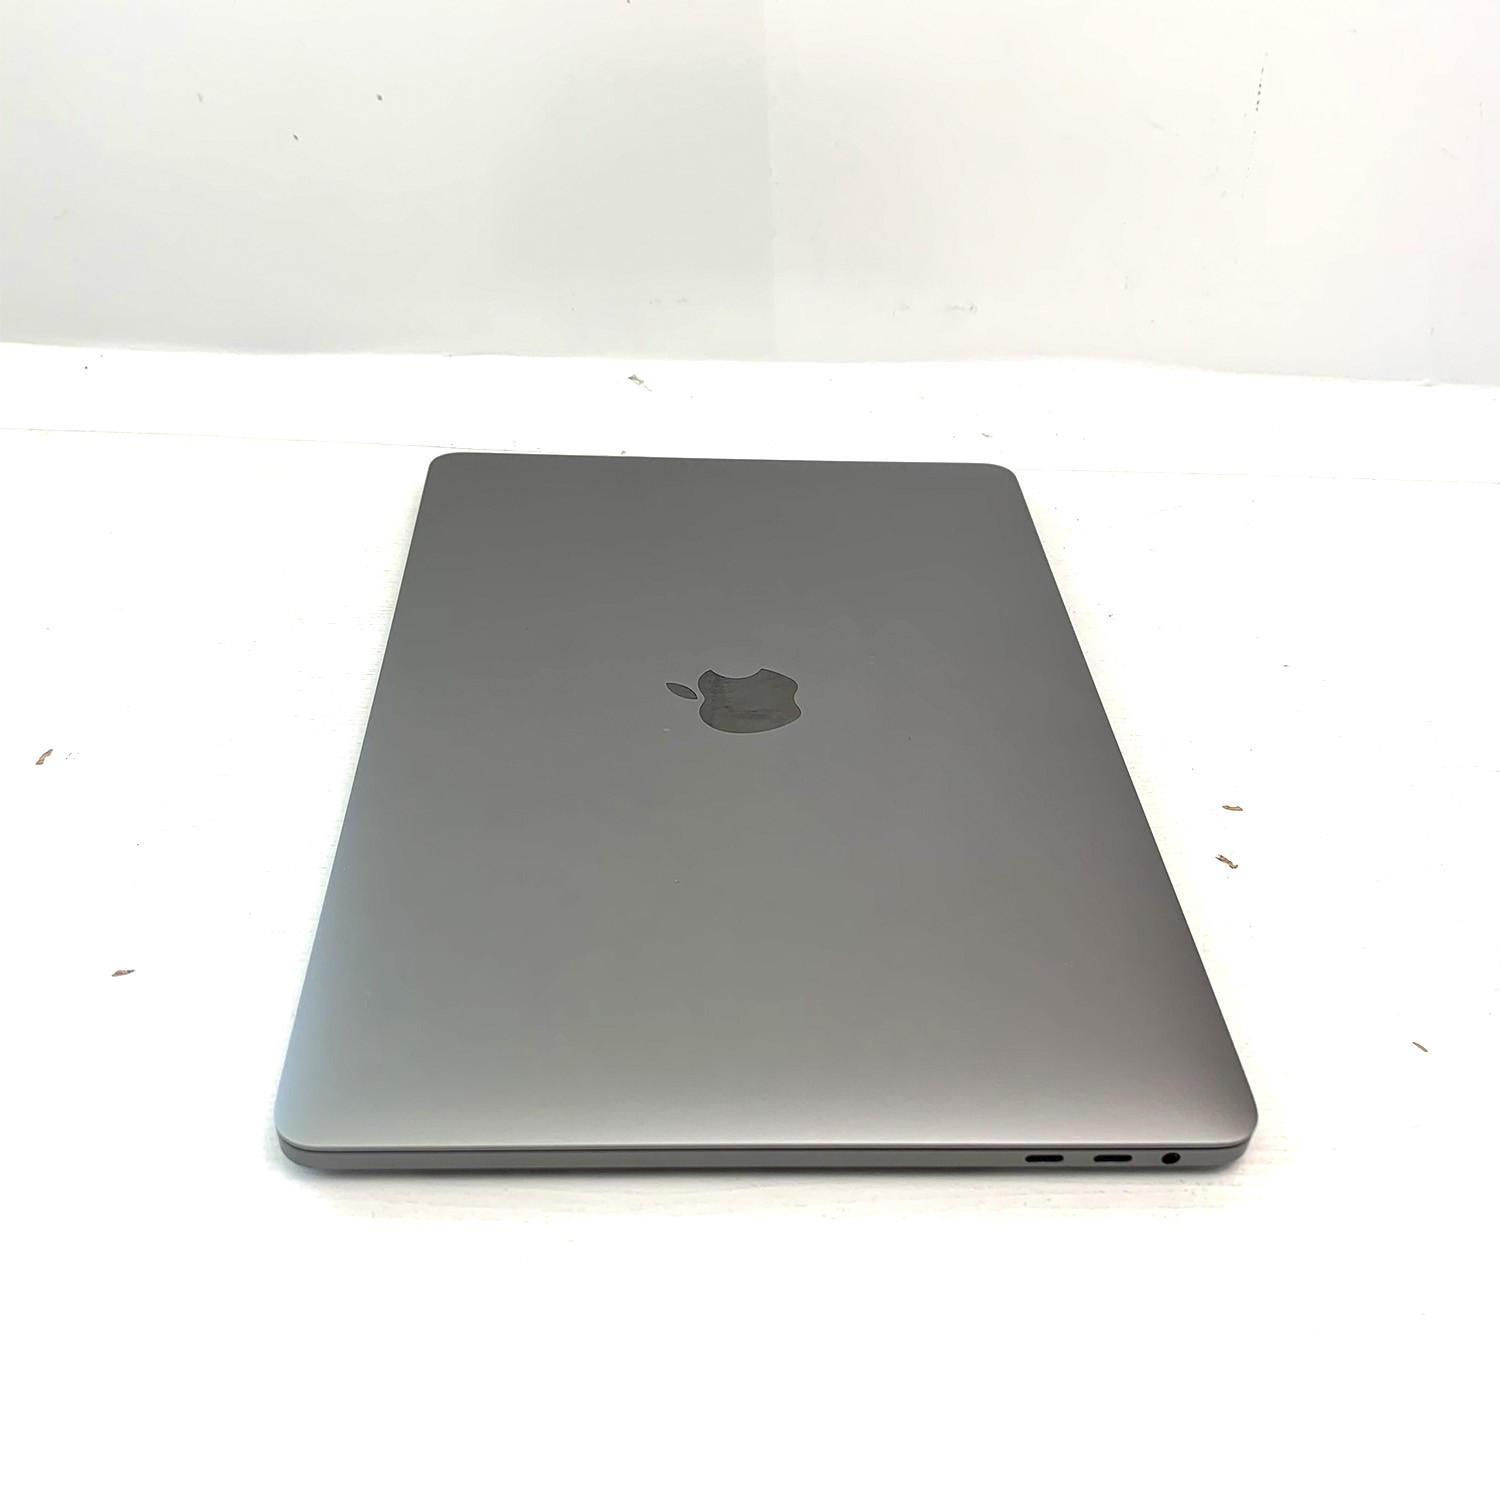 Macbook Pro 13 Touch Bar Space Grey i5 2.4Ghz 8GB 256GB SSD MV962LL/A Seminovo